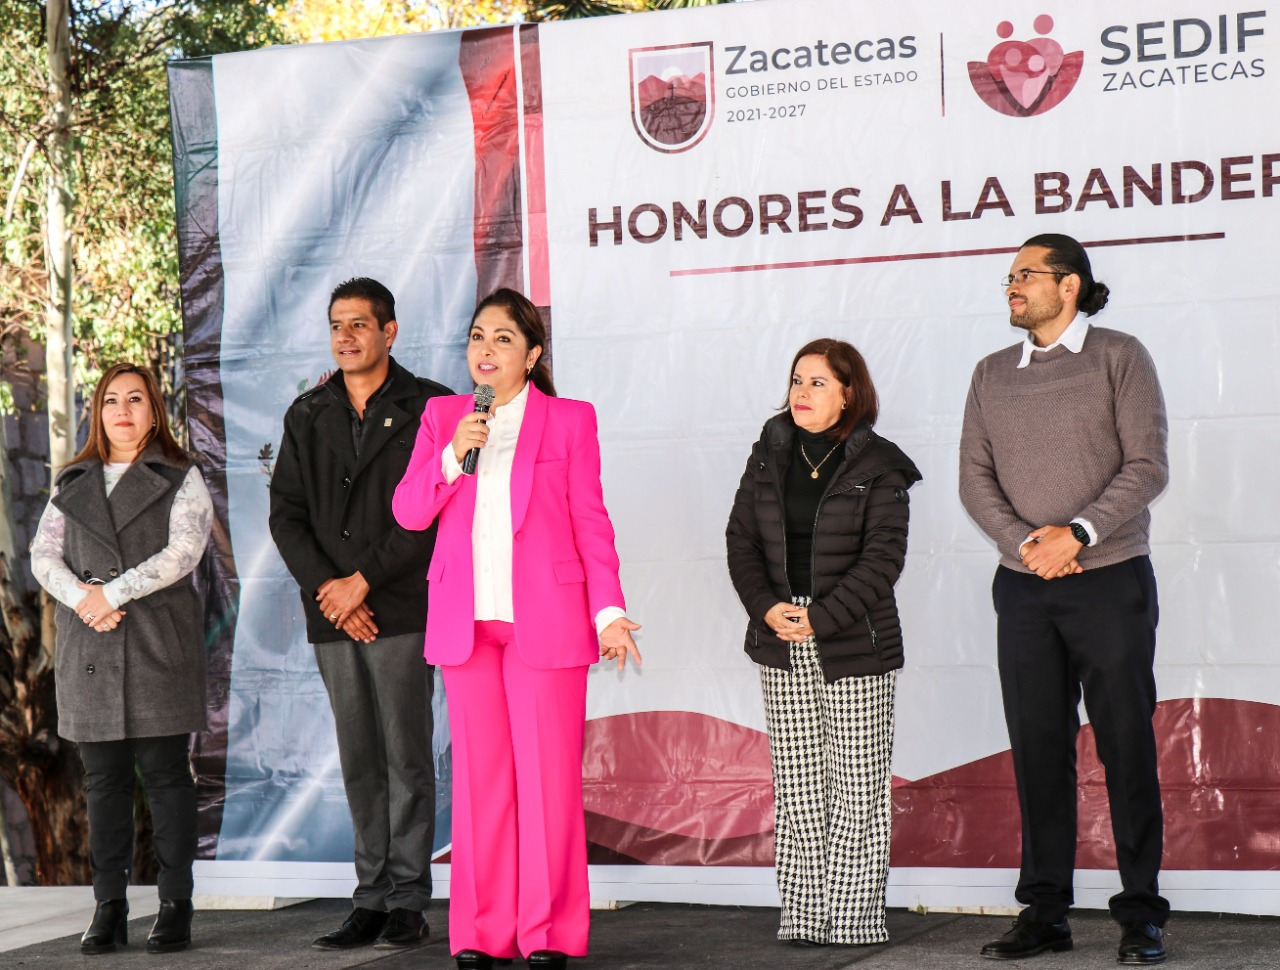 Presidenta Honorífica del SEDIF, Sara Hernández de Monreal, llama a la unidad para lograr el bienestar de Zacatecas